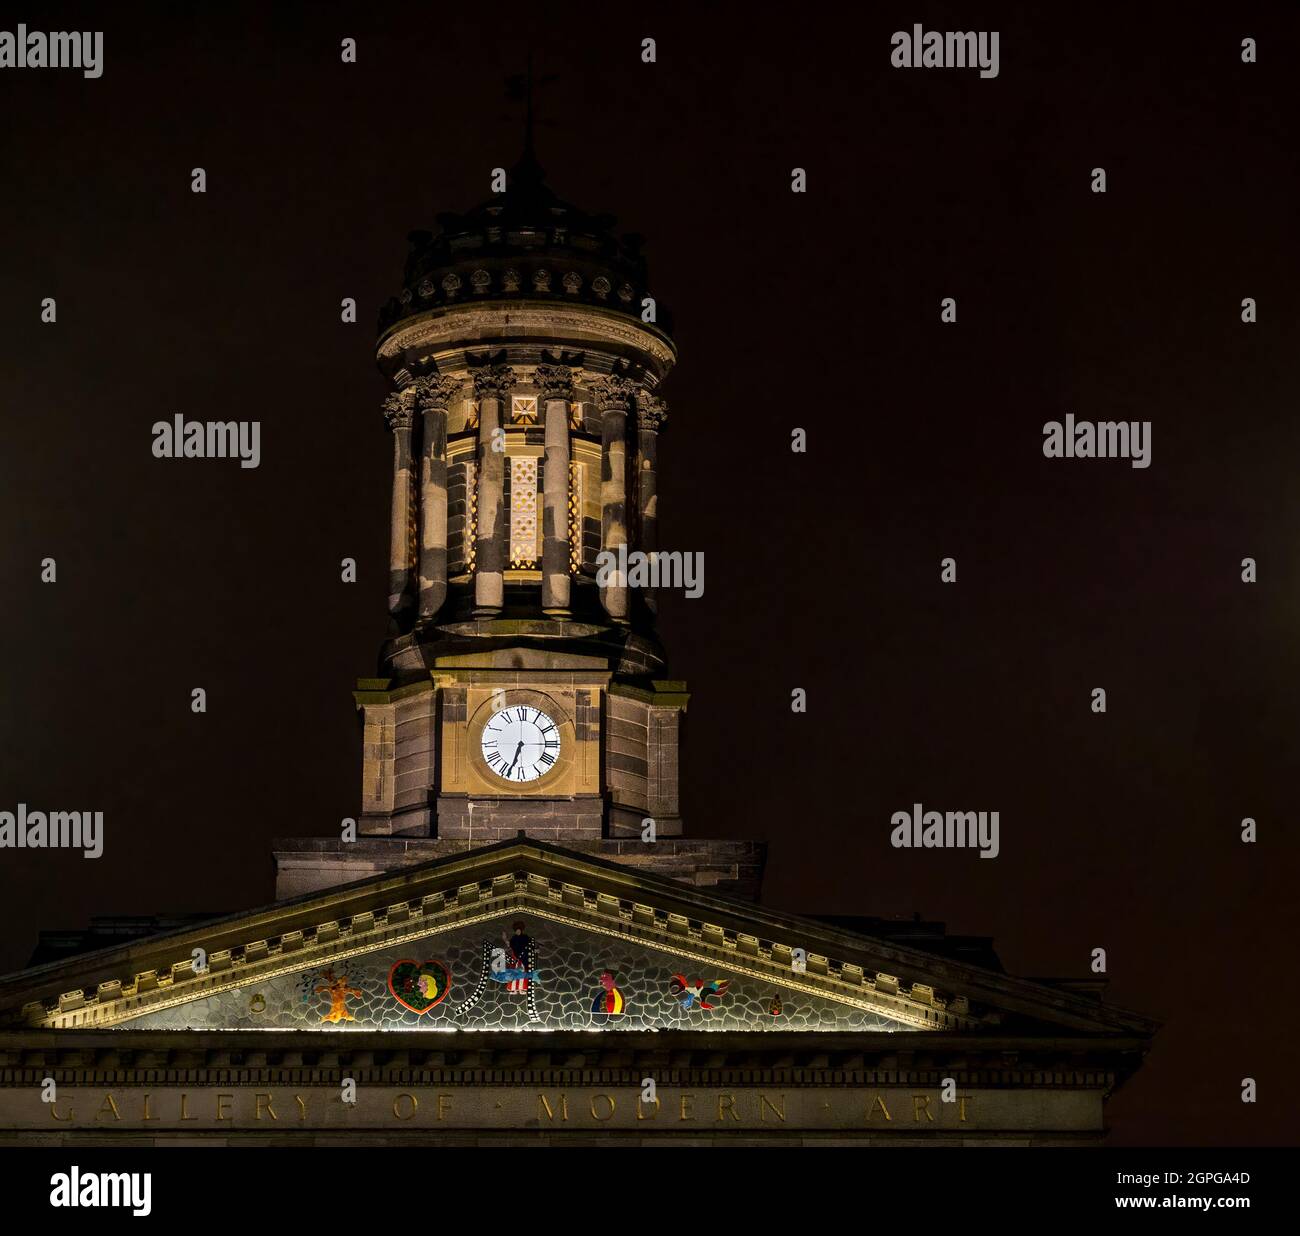 Guglie e torre dell'orologio, Gallery of Modern Art, Queen Street, Glasgow City Centre, Scotland, UK, illuminata di notte con archi di luci e cielo scuro Foto Stock